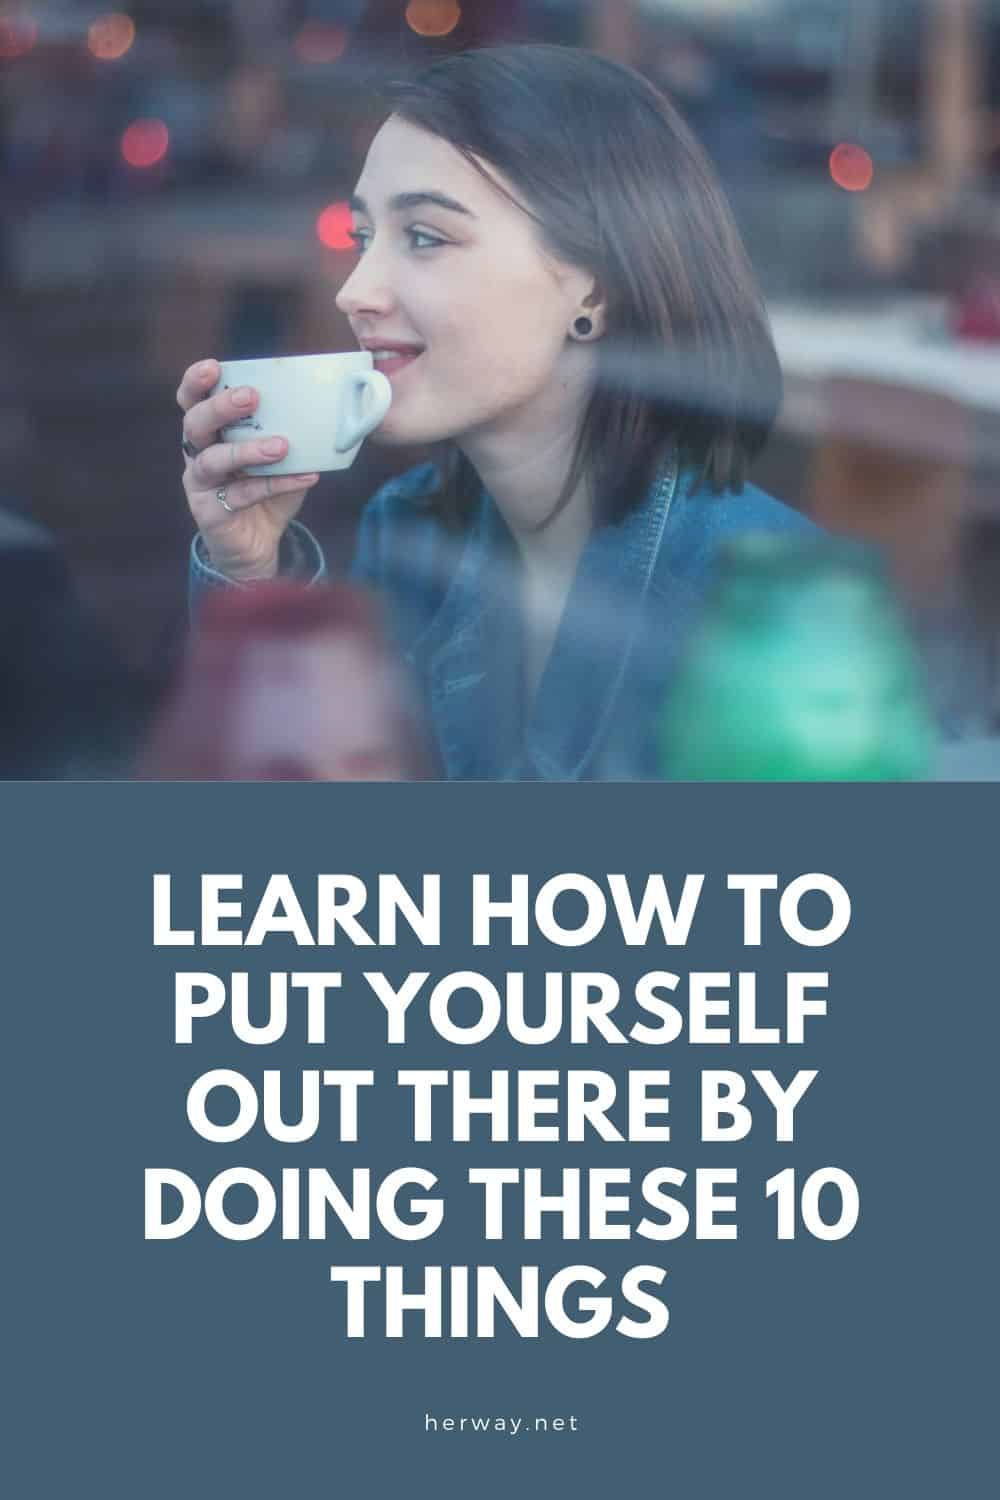 Imparate a mettervi in gioco facendo queste 10 cose